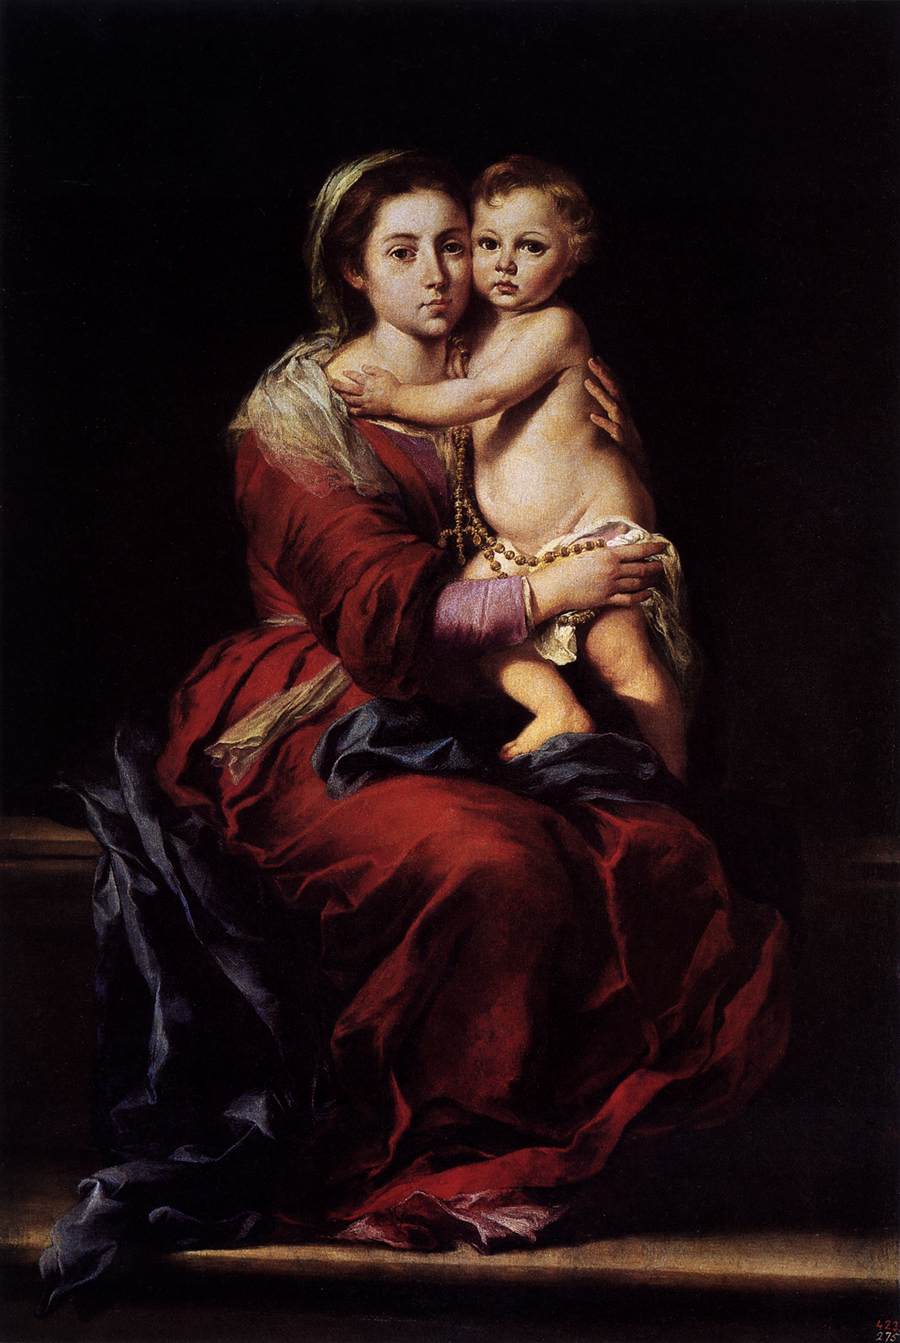 La vierge et l'enfant avec un chapelet